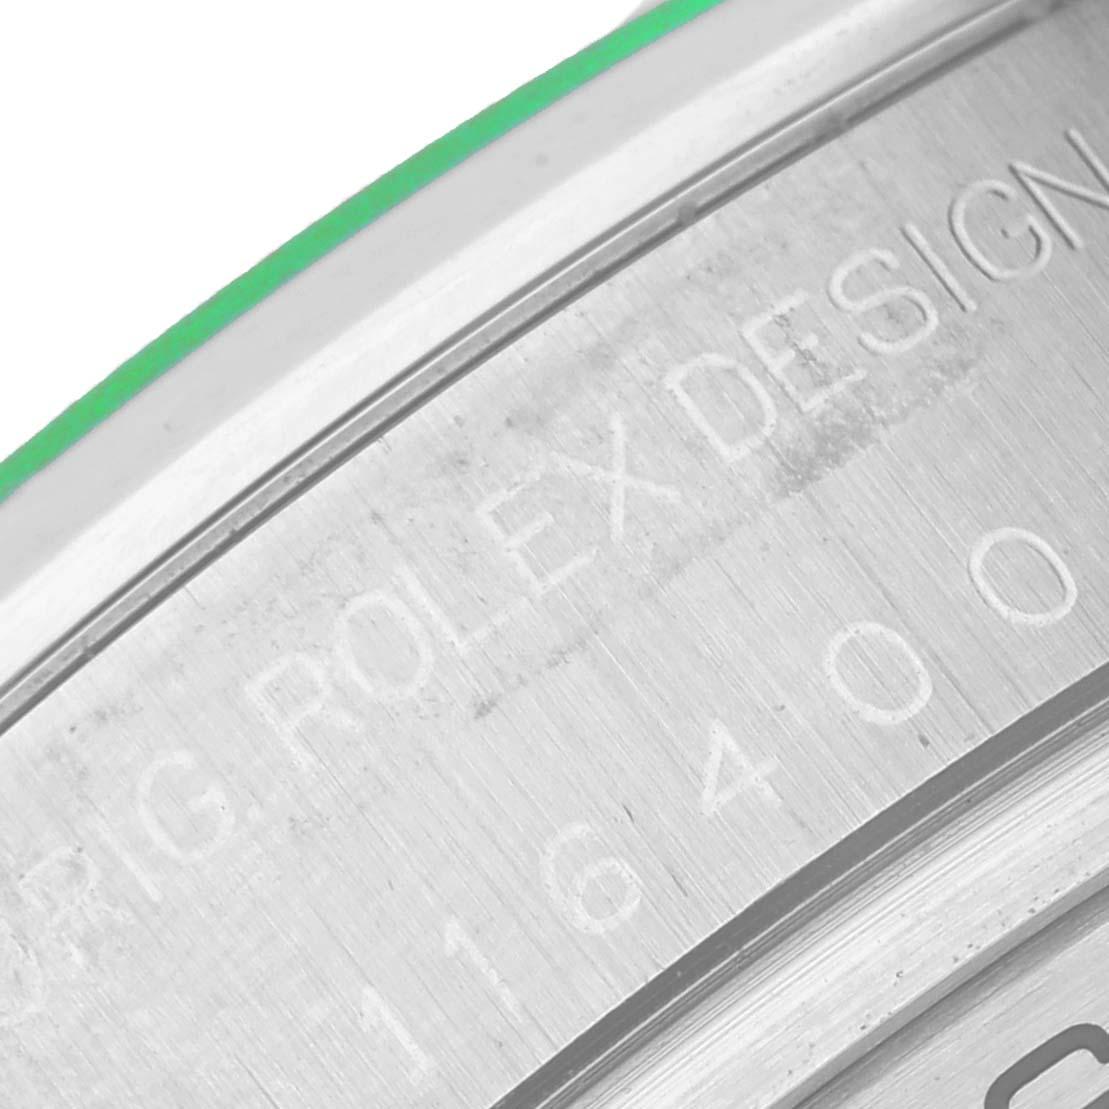 Rolex Milgauss Black Dial Green Crystal Steel Mens Watch 116400. Mouvement automatique à remontage automatique, officiellement certifié chronomètre. Boîtier en acier inoxydable de 40,0 mm de diamètre. Lunette lisse en acier inoxydable. Verre saphir